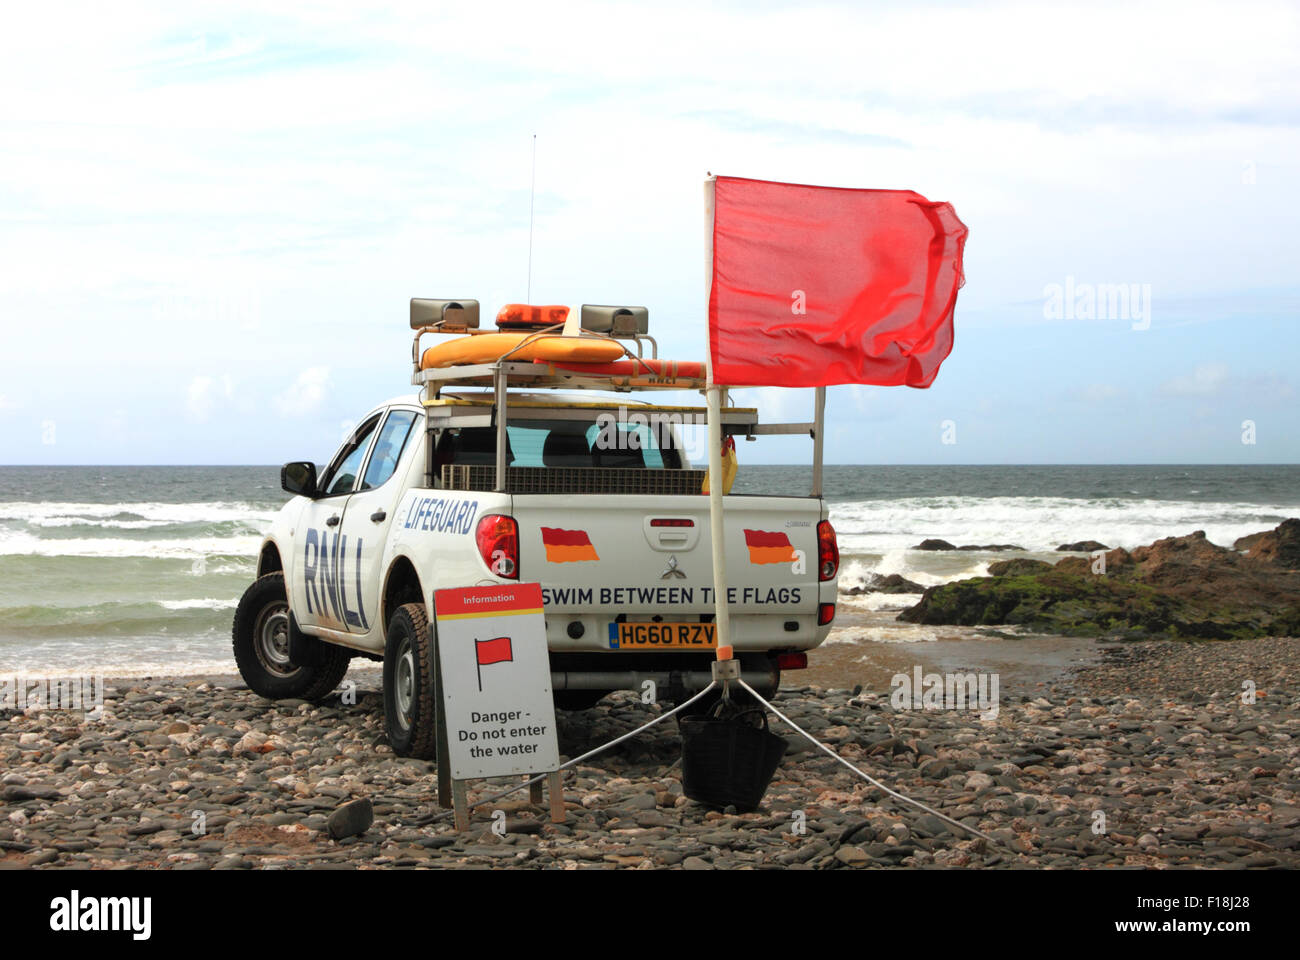 Una Toyota Hilux RNLI Lifeguard veicolo con una spia rossa bandiera che vieta la balneazione sulla spiaggia. Foto Stock